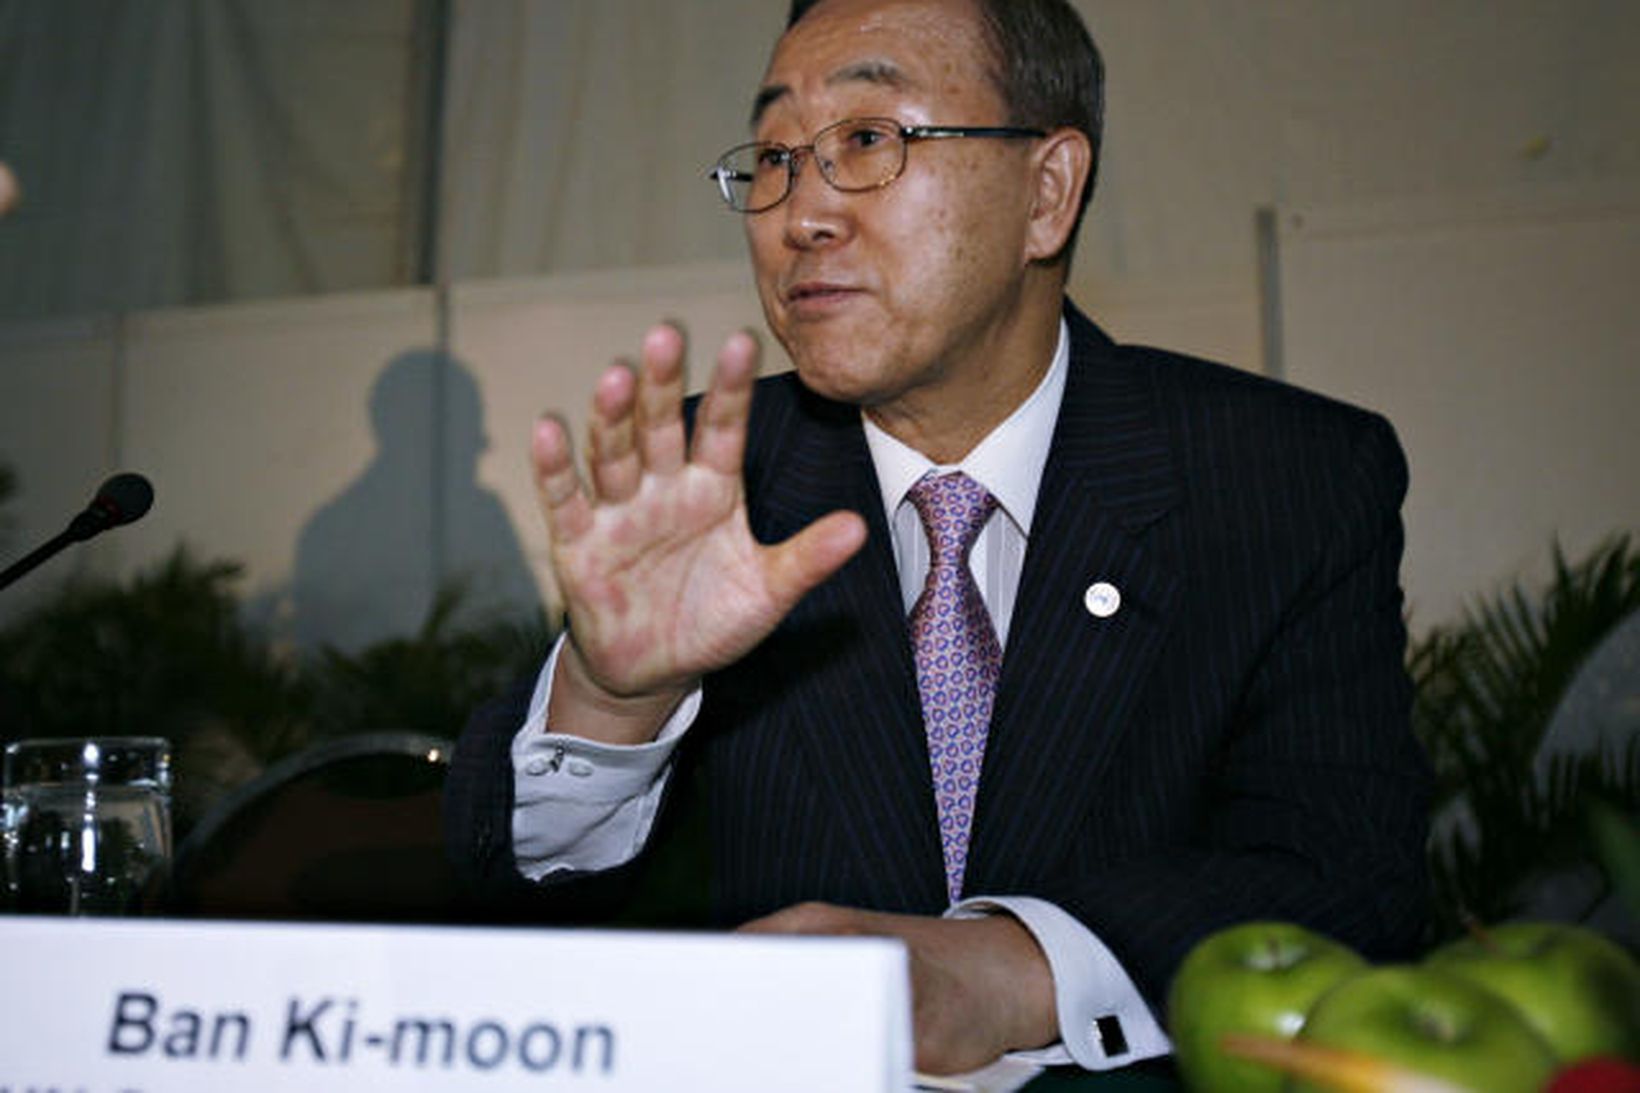 Ban Ki-moon, framkvæmdastjóri SÞ, á loftlagsráðstefnunni á Balí.